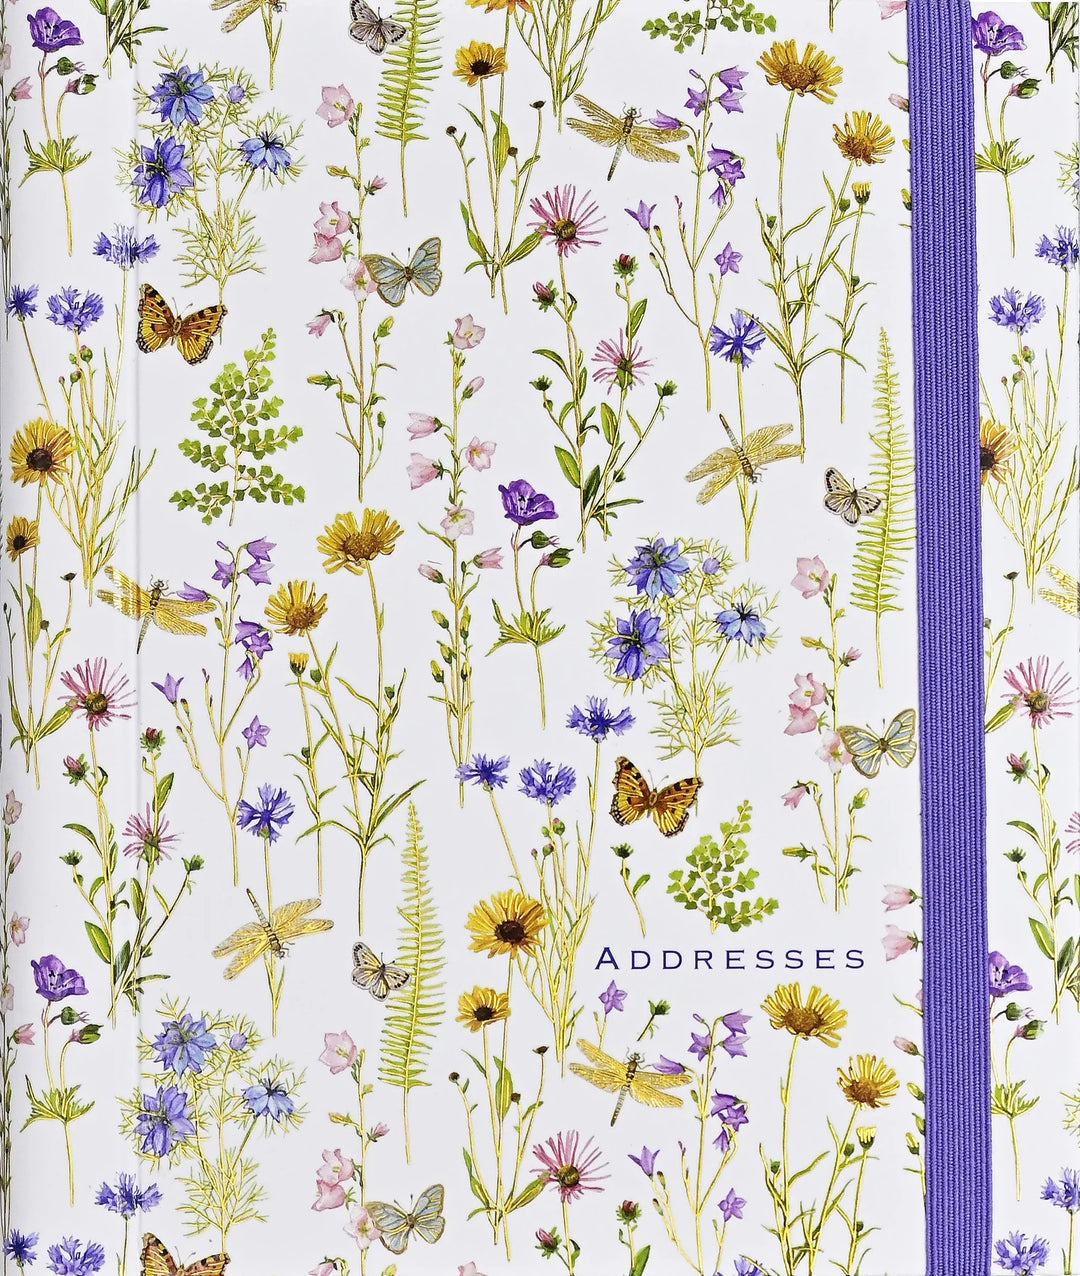 Wildflower Garden Large Address Book